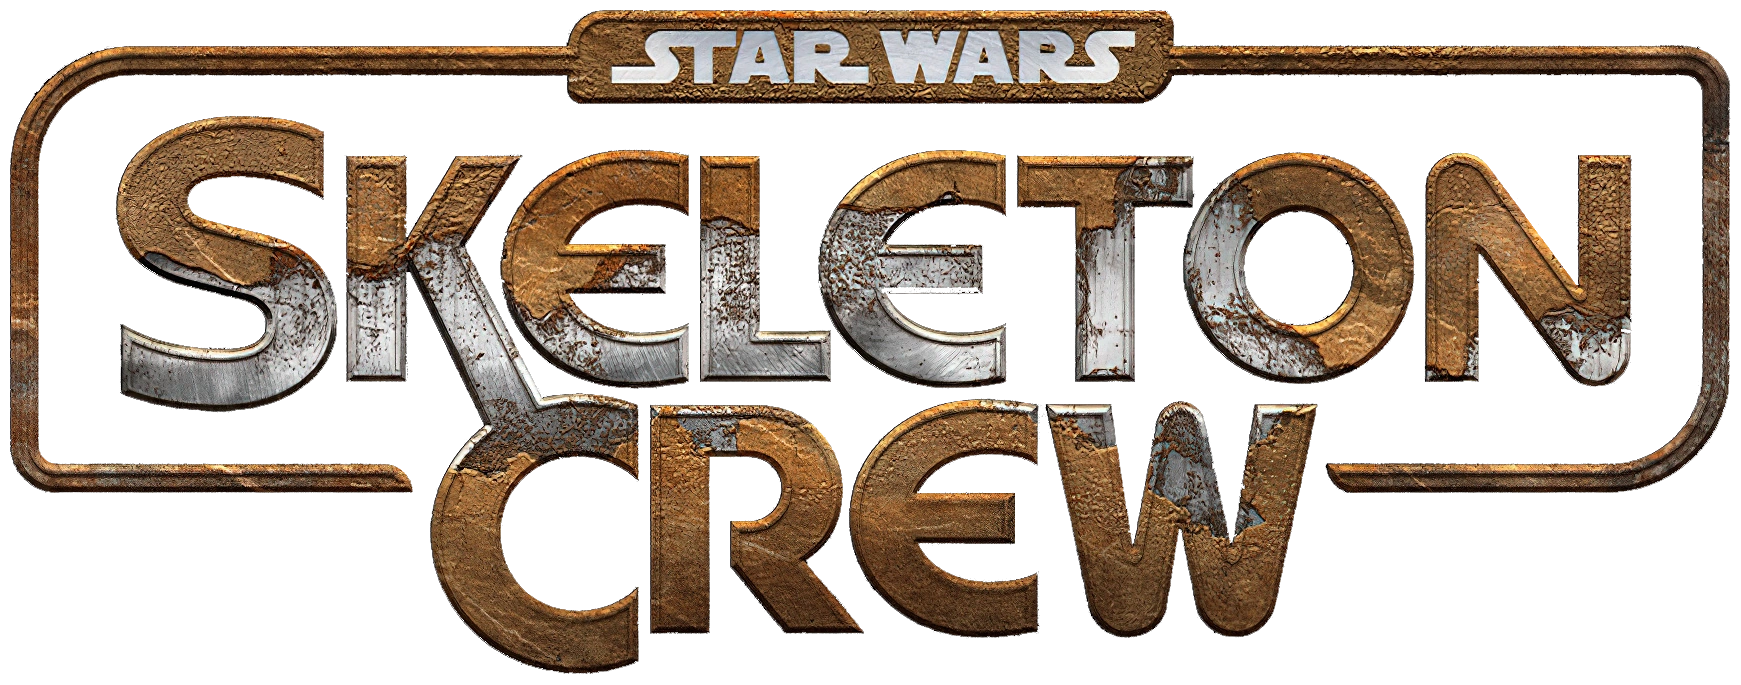 Star Wars Skeleton Crew logo